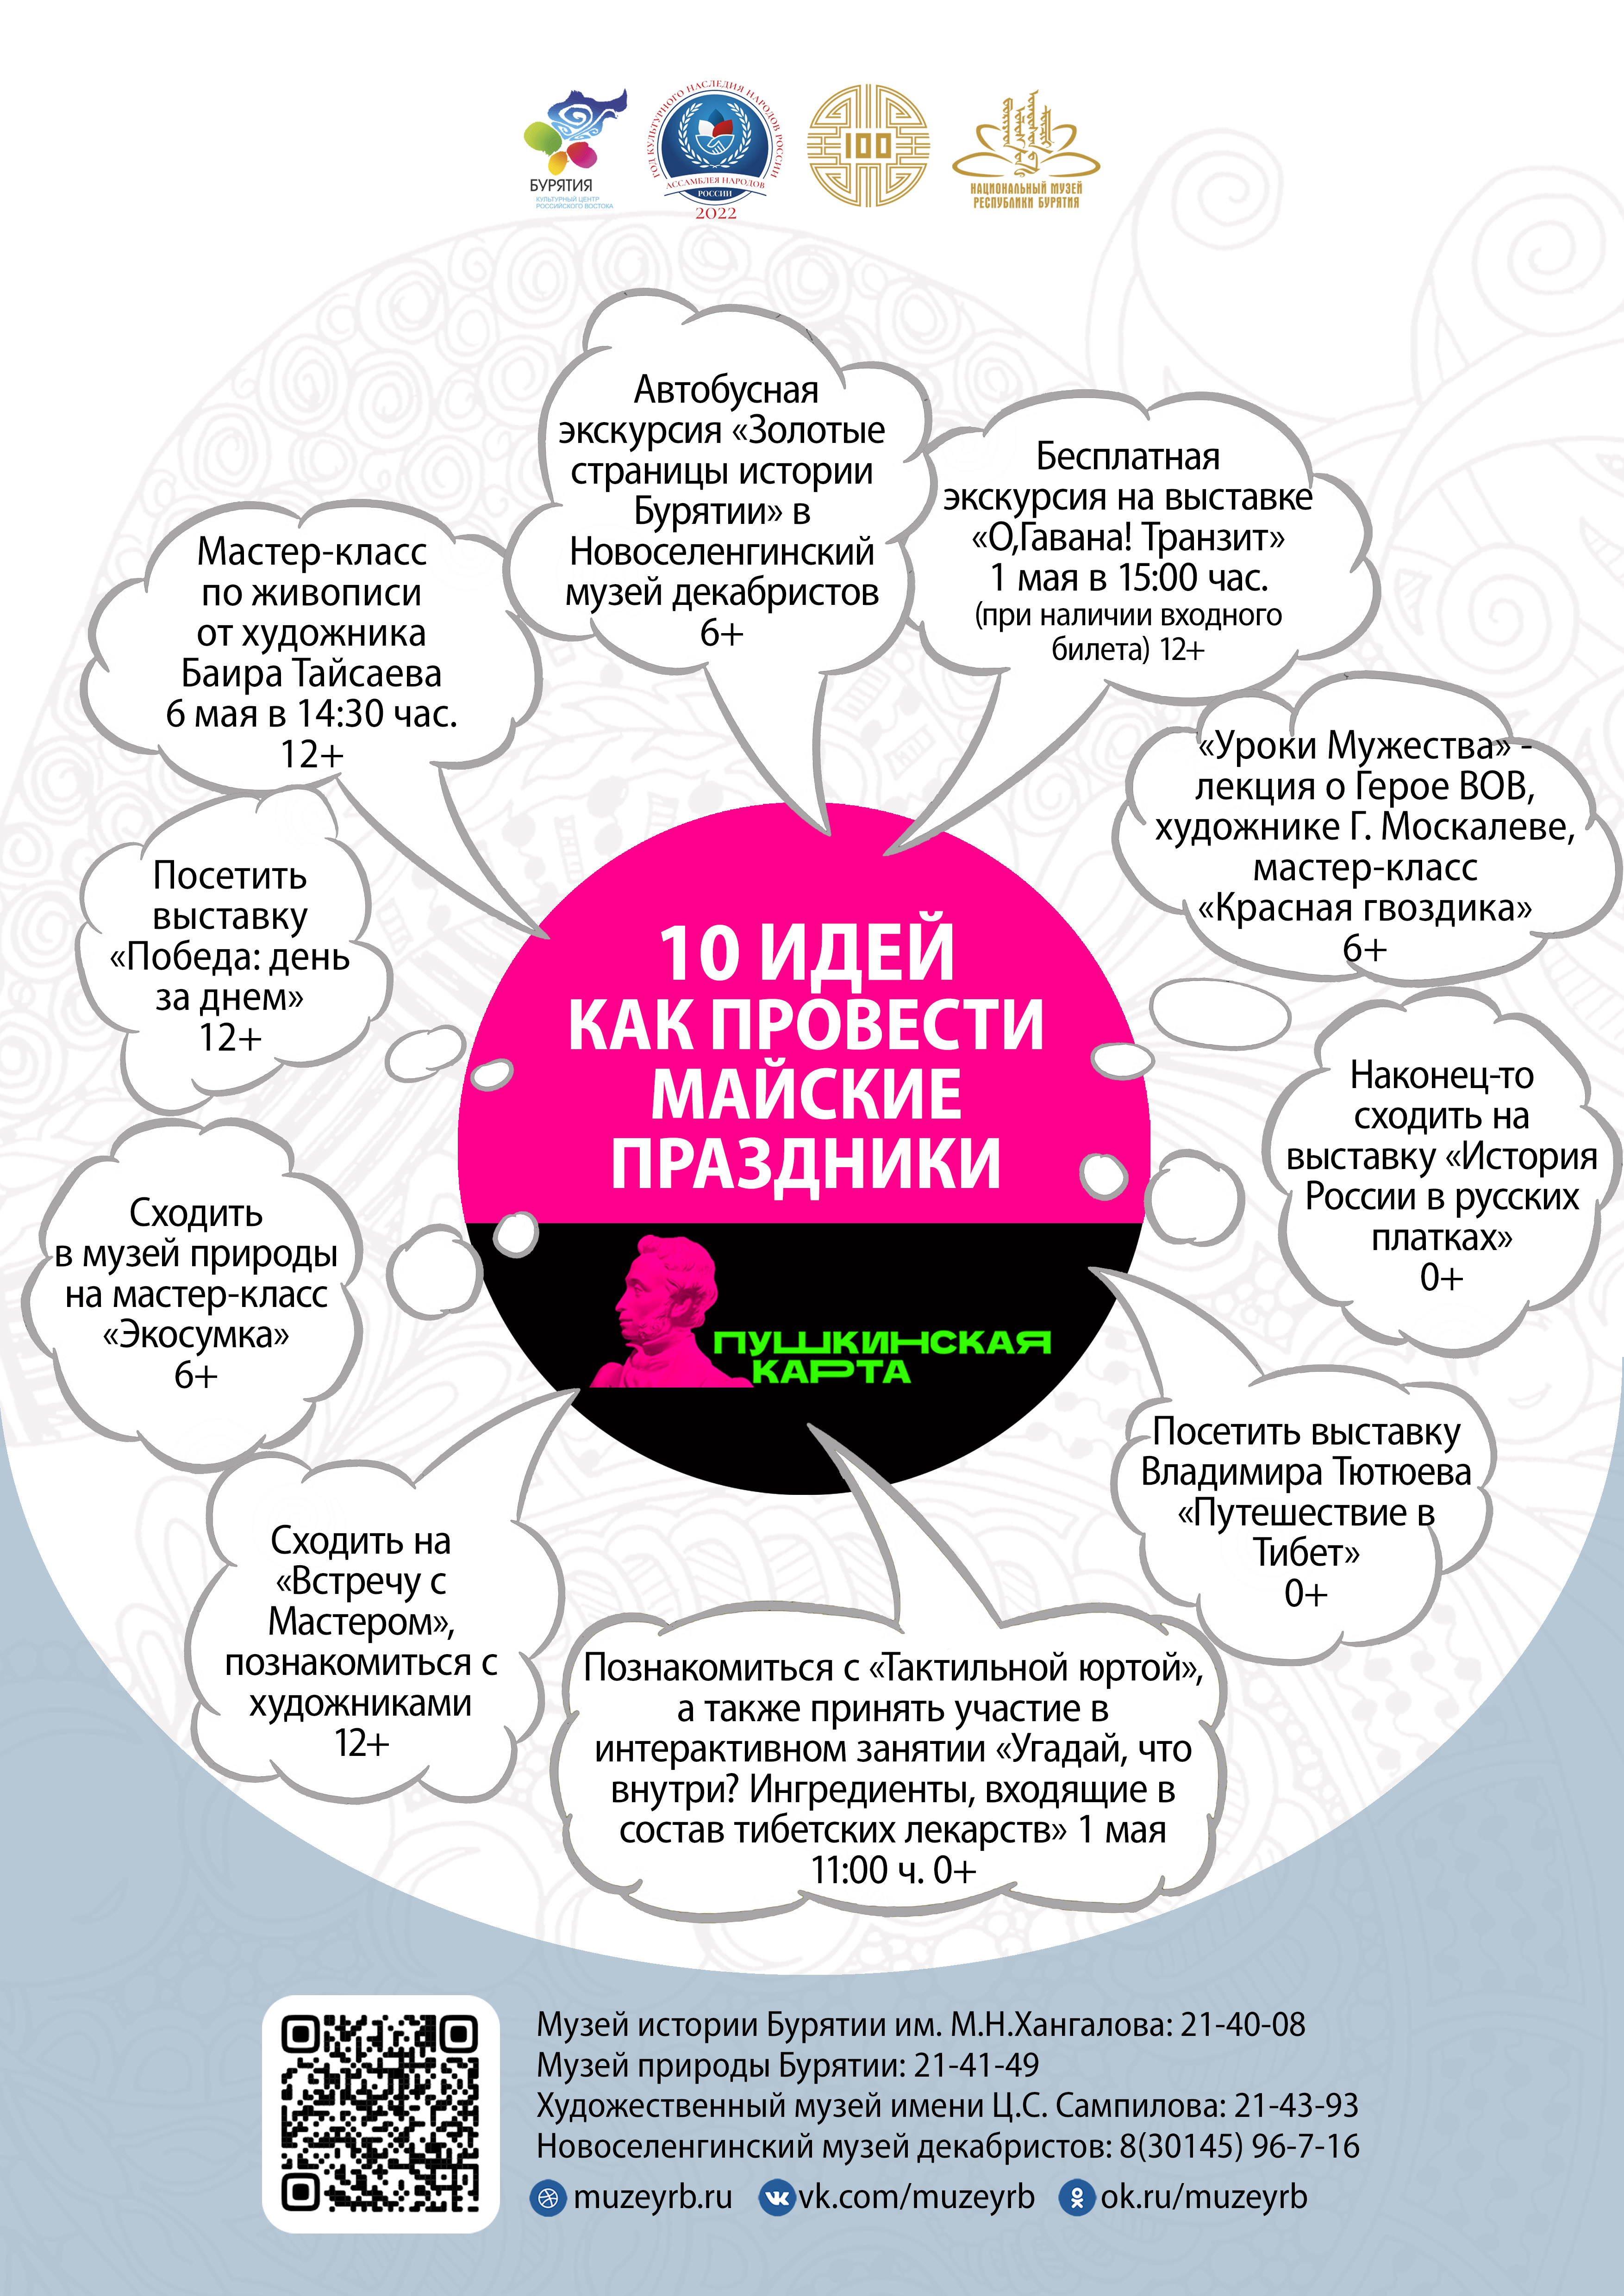 10 идей как провести майские праздники по Пушкинской карте в Национальном музее Бурятии